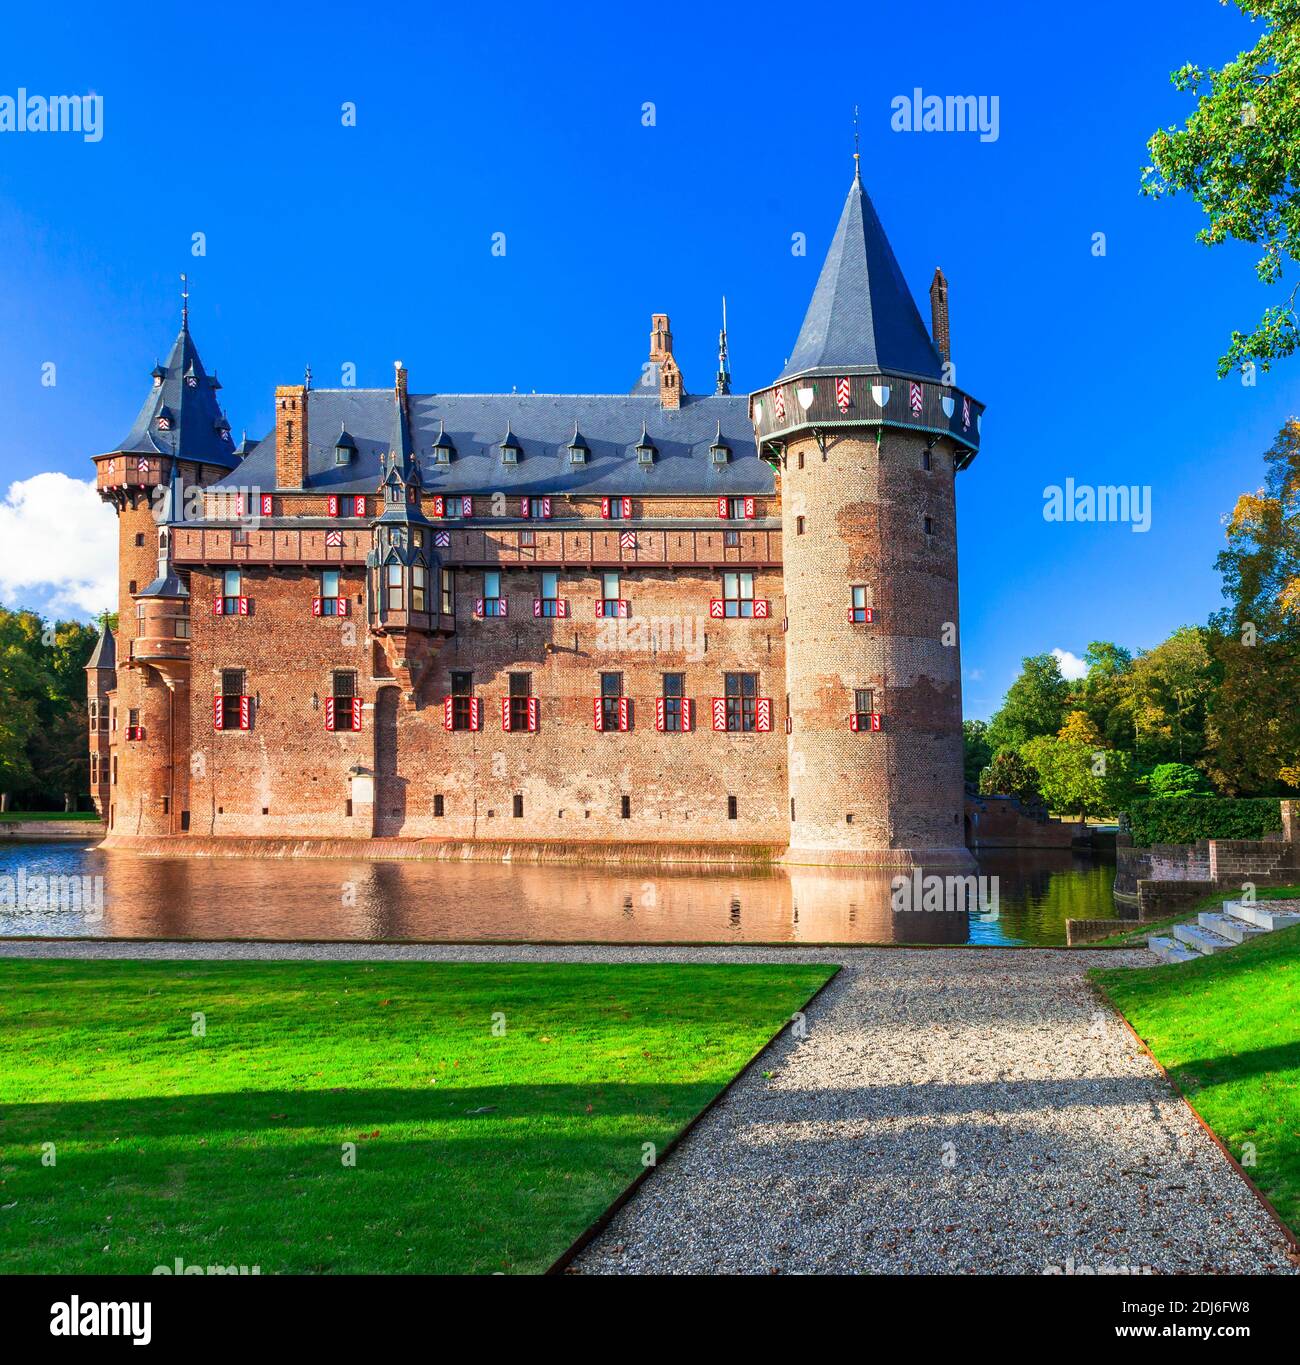 Les plus beaux châteaux médiévaux d'Europe - de Haar en Hollande, ville d'Utrecht, pays-Bas Banque D'Images